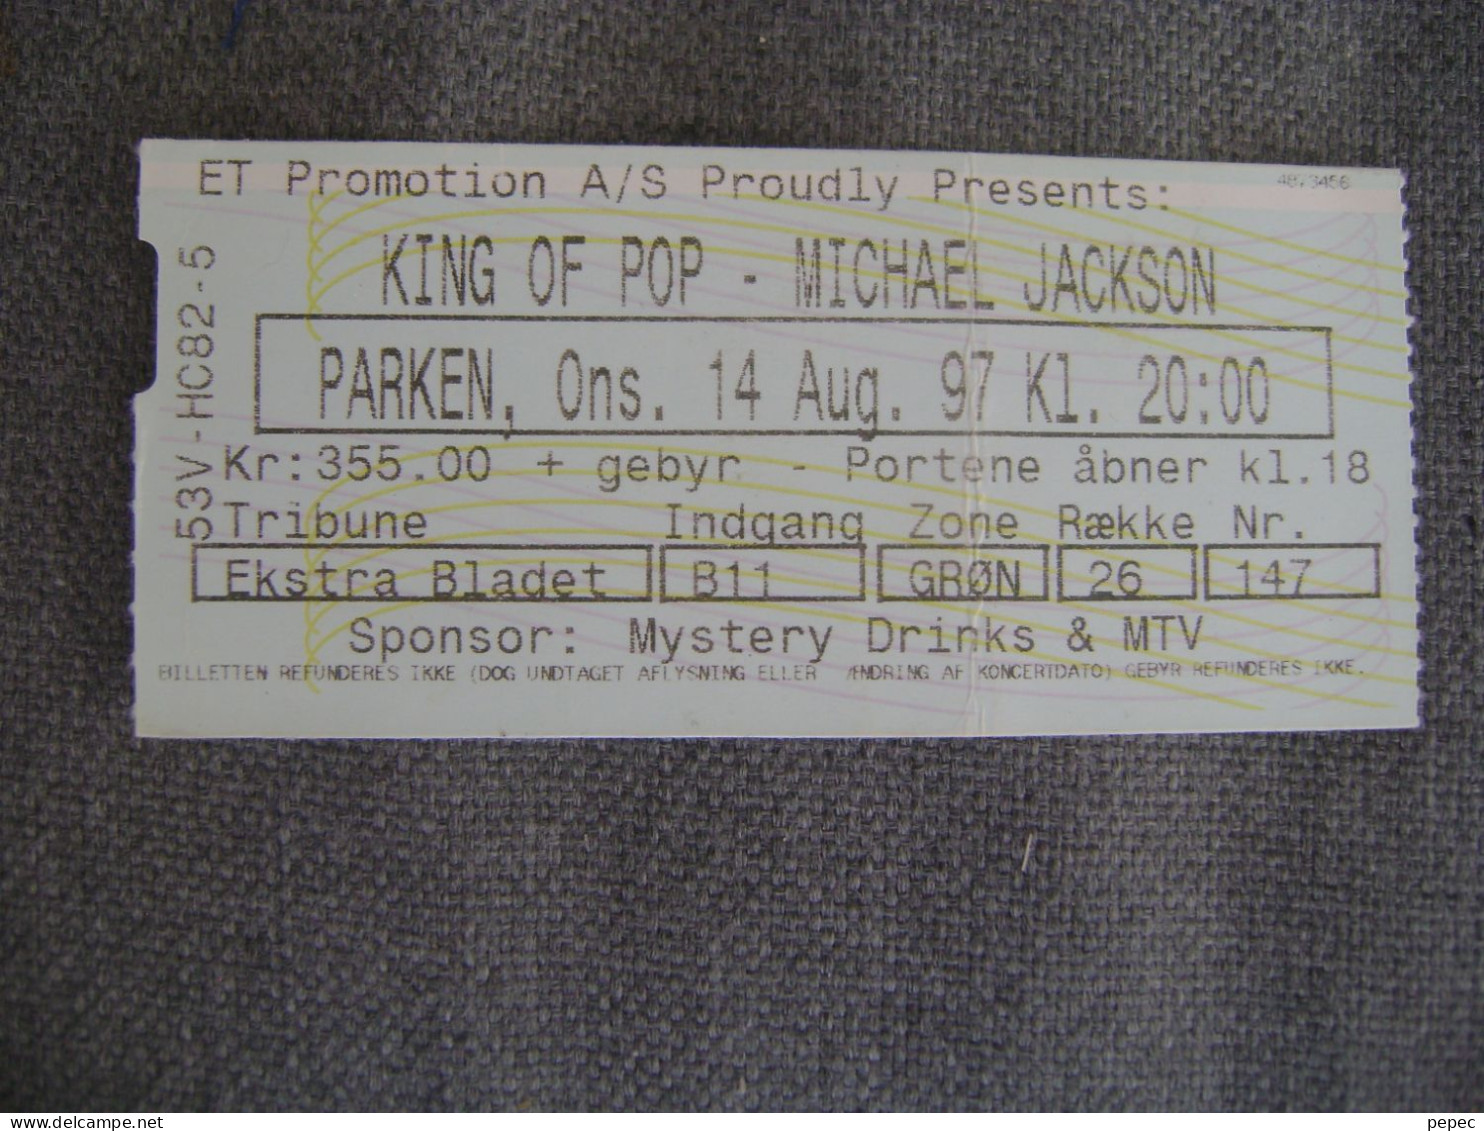 MICHAEL JACKSON  PARKEN - KOPENHAGEN  14/08/1997 - Entradas A Conciertos